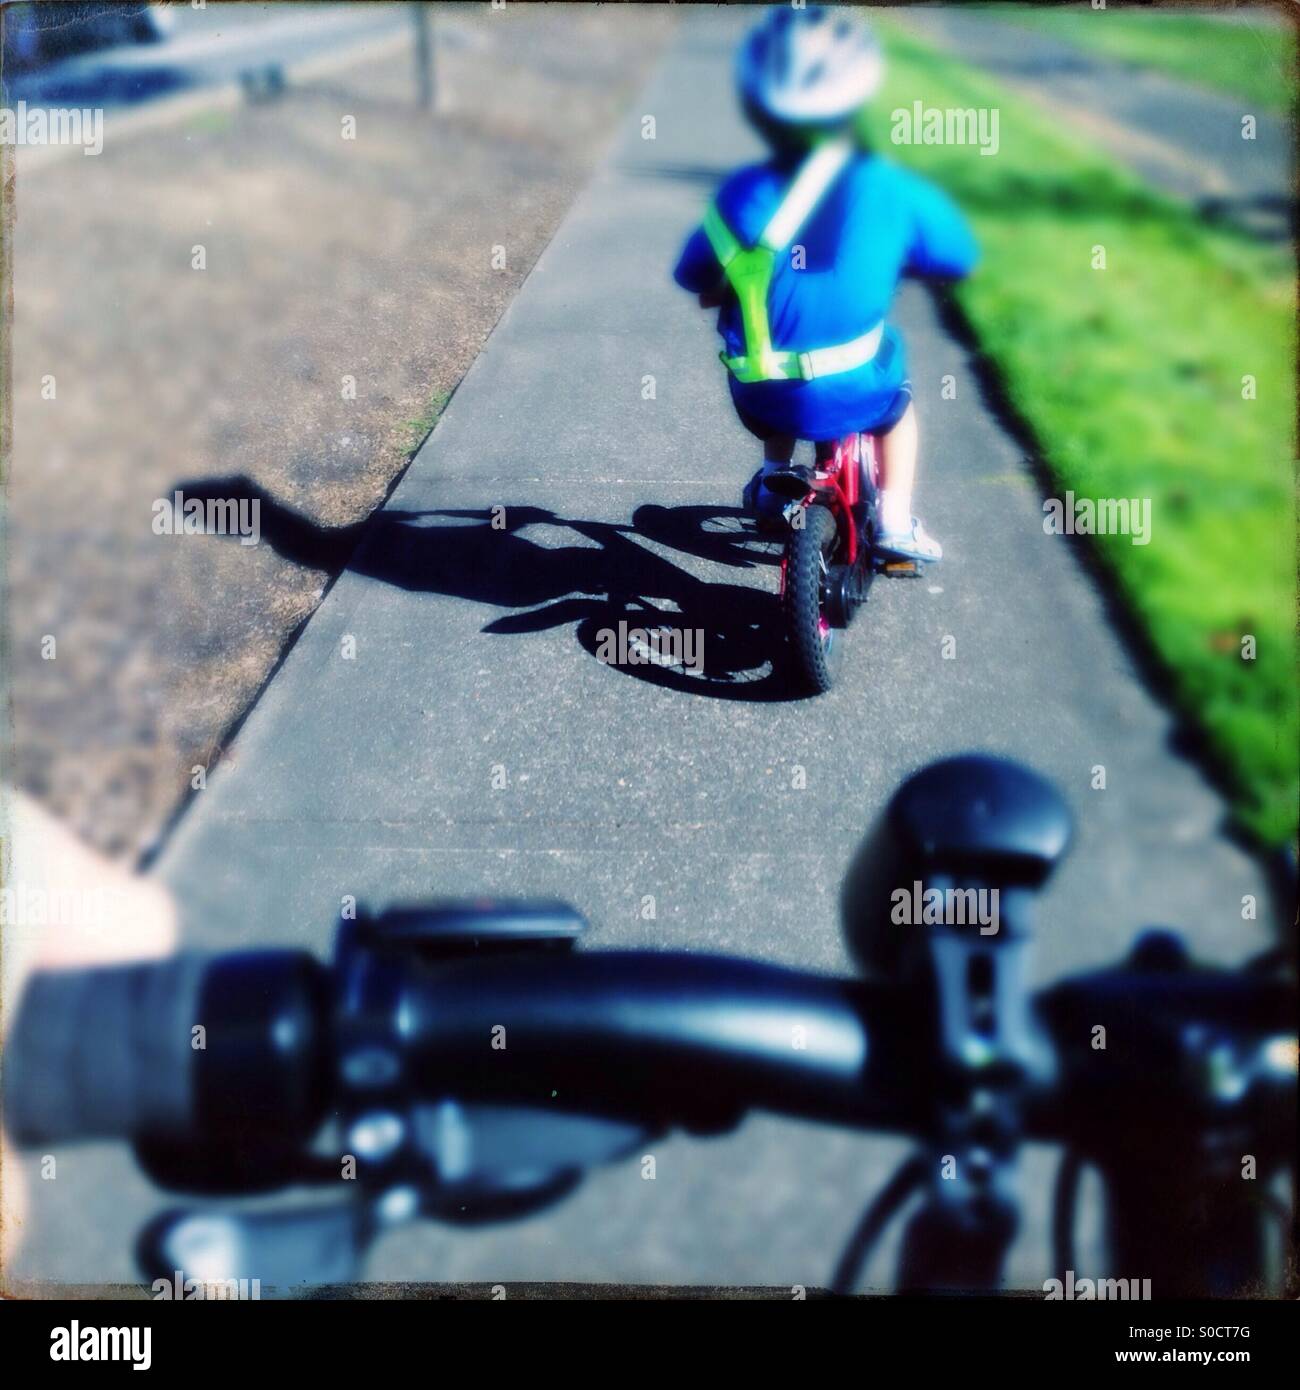 Kinder Reiten Fahrrad Bürgersteig Warnweste tragen Stockfotografie - Alamy